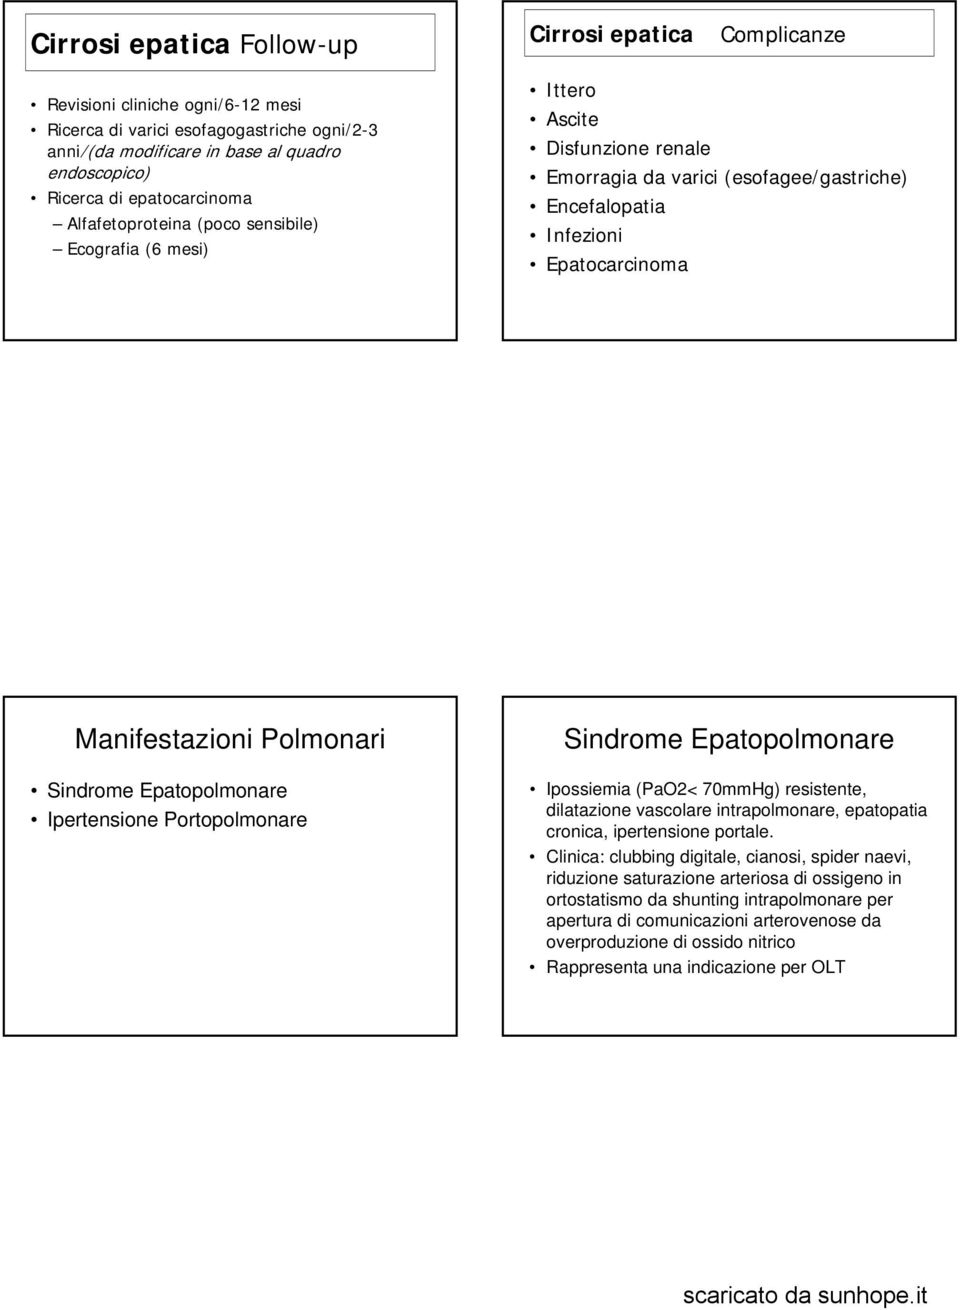 Polmonari Sindrome Epatopolmonare Ipertensione Portopolmonare Sindrome Epatopolmonare Ipossiemia (PaO2< 70mmHg) resistente, dilatazione vascolare intrapolmonare, epatopatia cronica, ipertensione